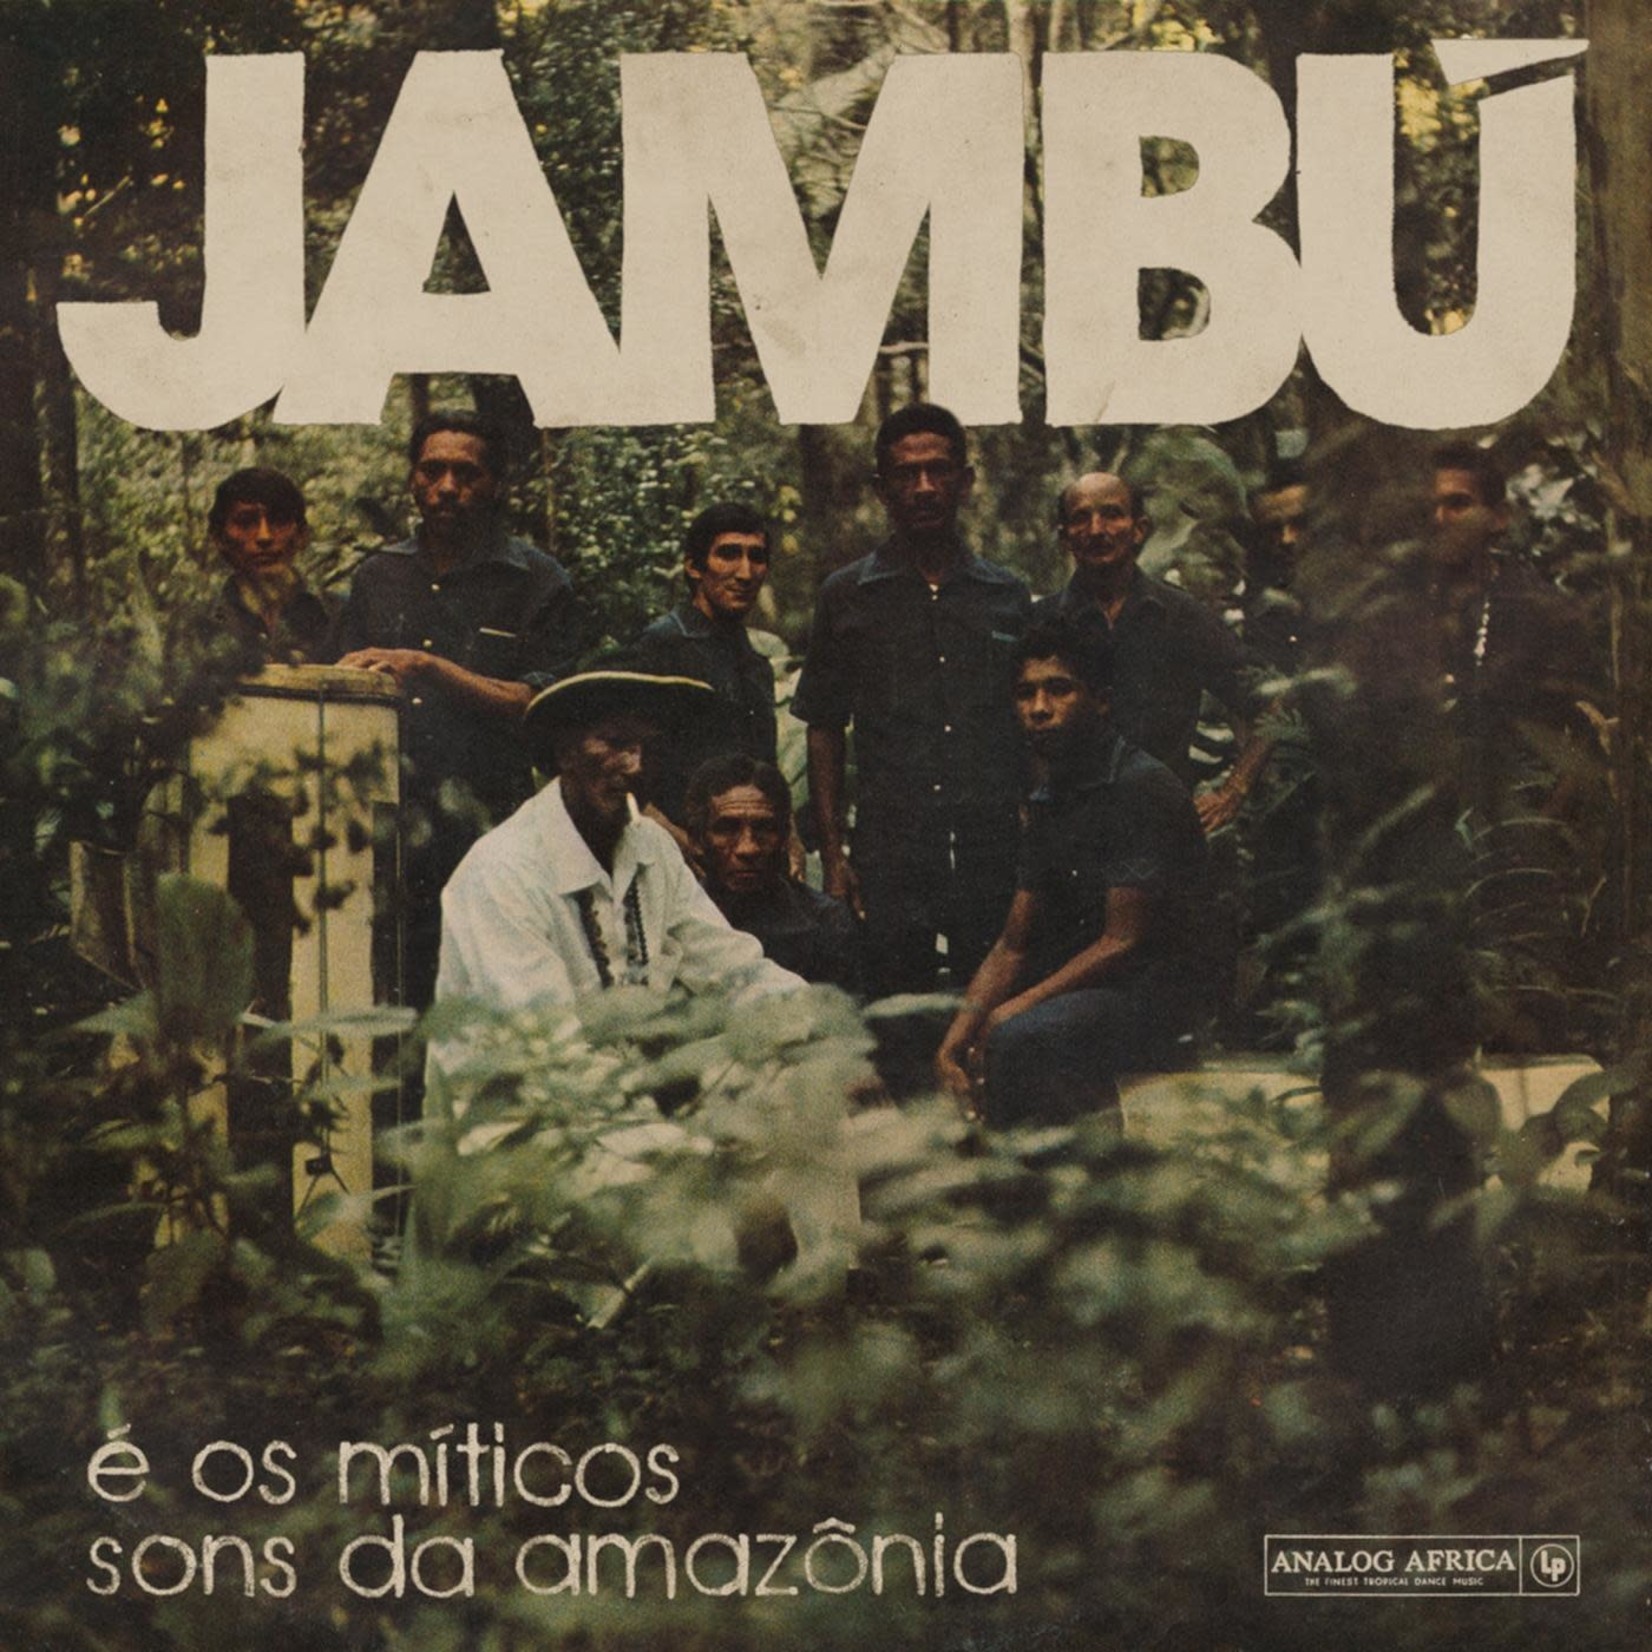 Analog Africa V/A - Jambu e os miticos sons da amazonia (2LP)